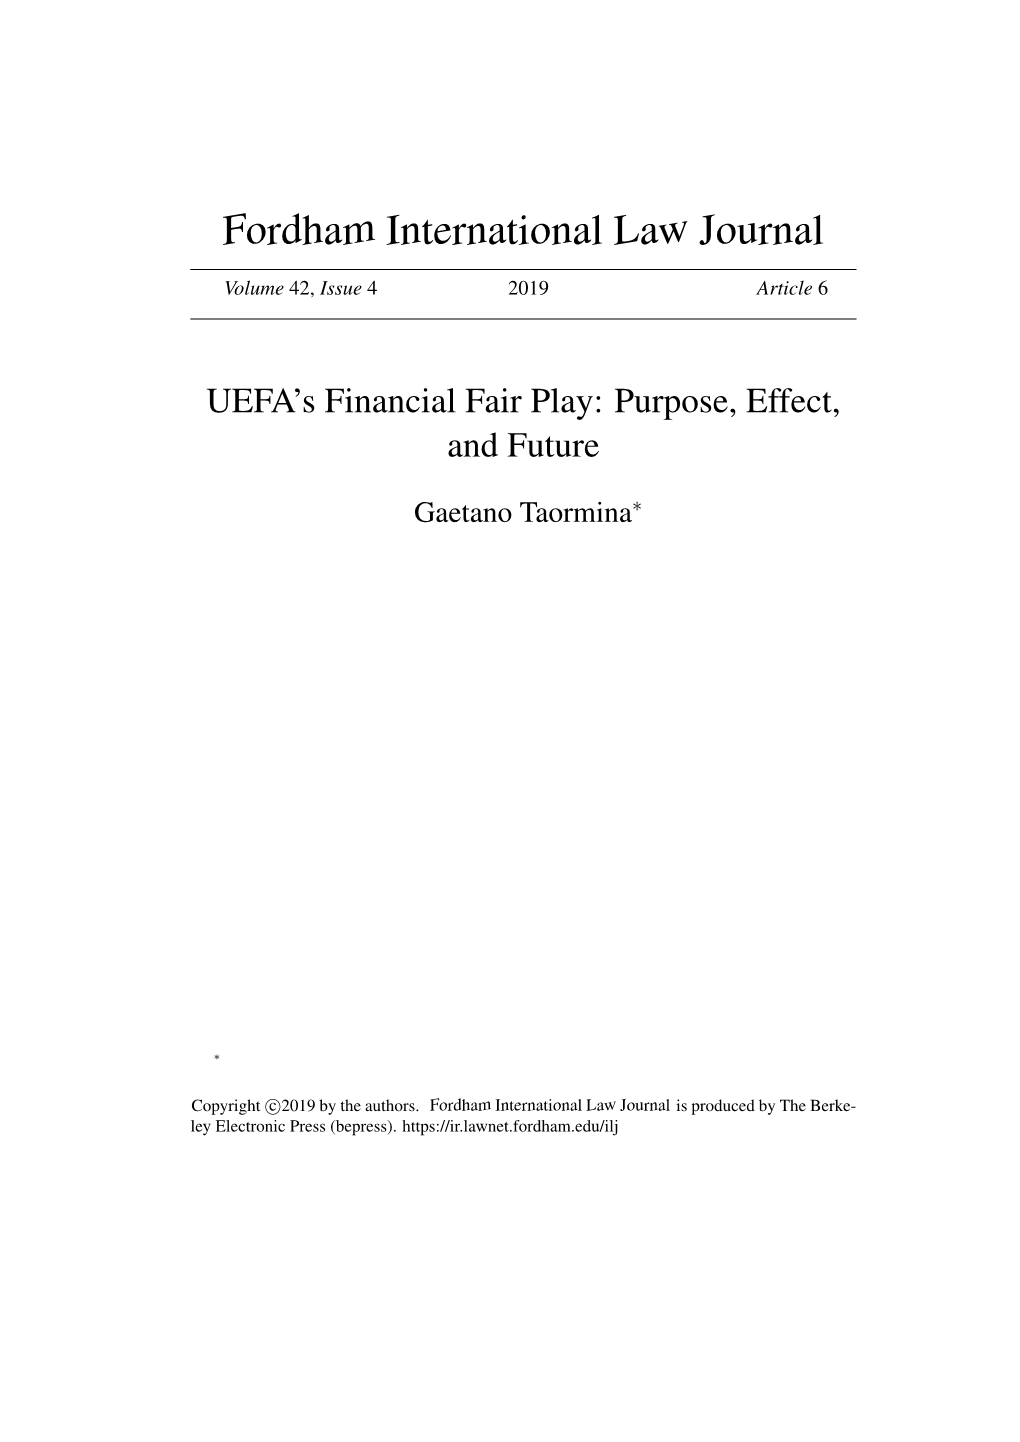 UEFA's Financial Fair Play